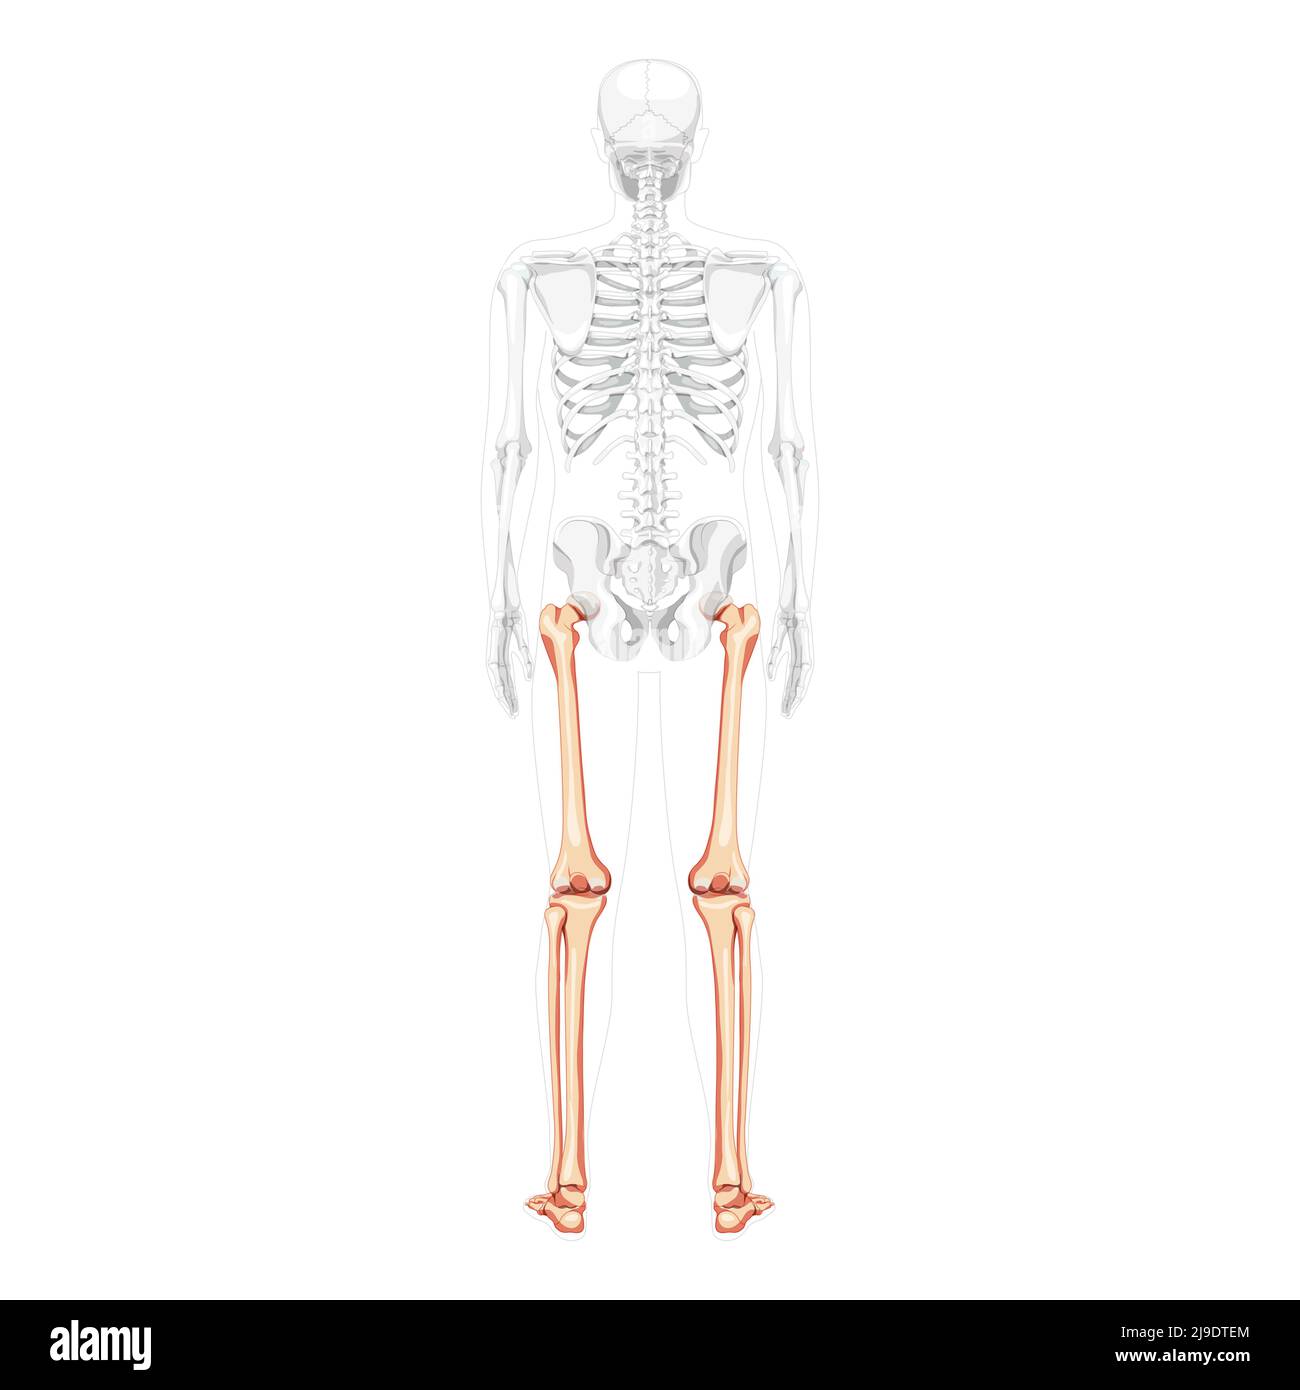 Squelette cuisses et jambes membre inférieur vue du dos humain avec position des os partiellement transparente. Tibia, pied réaliste plat naturel couleur concept illustration vectorielle de l'anatomie isolée sur fond blanc Illustration de Vecteur